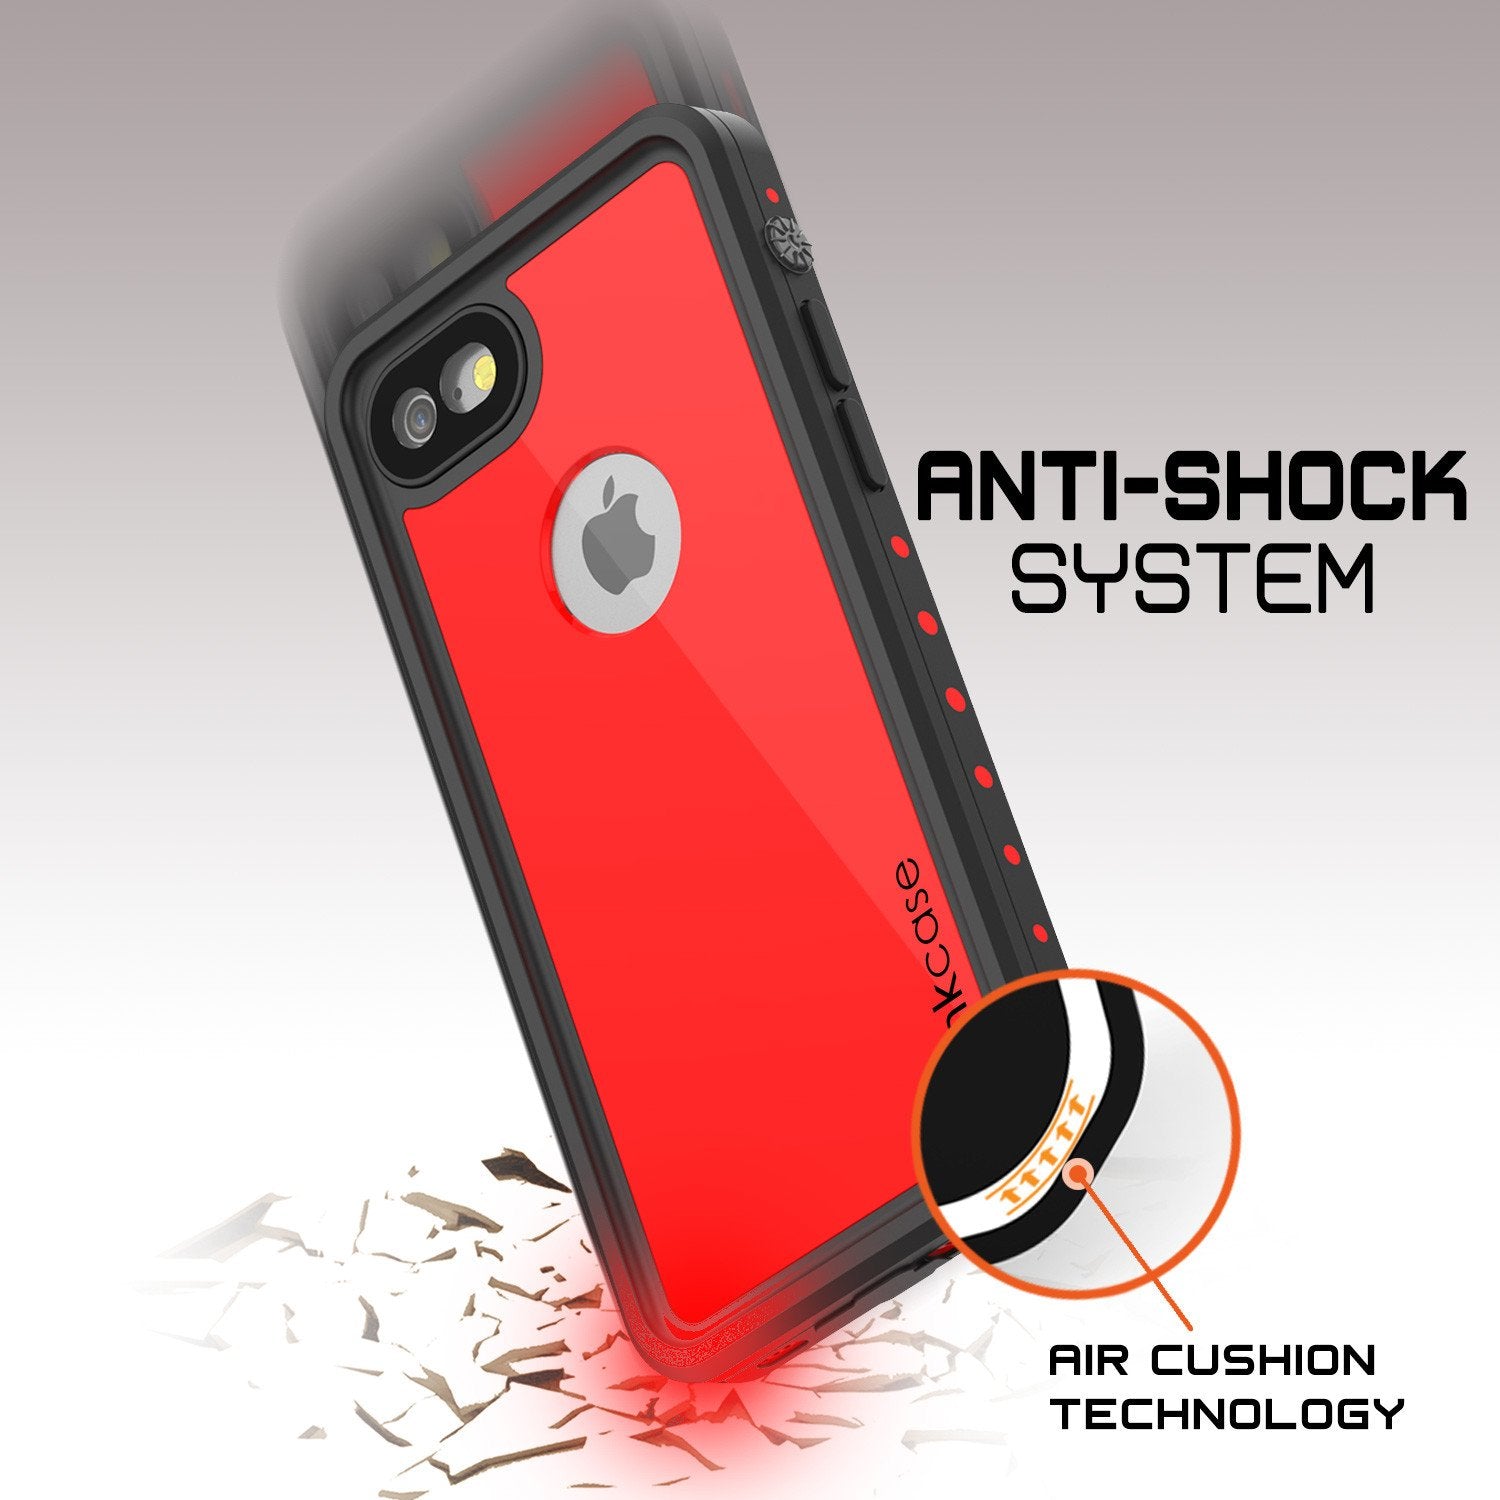 iPhone 7 Waterproof IP68 Case, Punkcase [Red] [StudStar Series] [Slim Fit] [Dirtproof] [Snowproof]